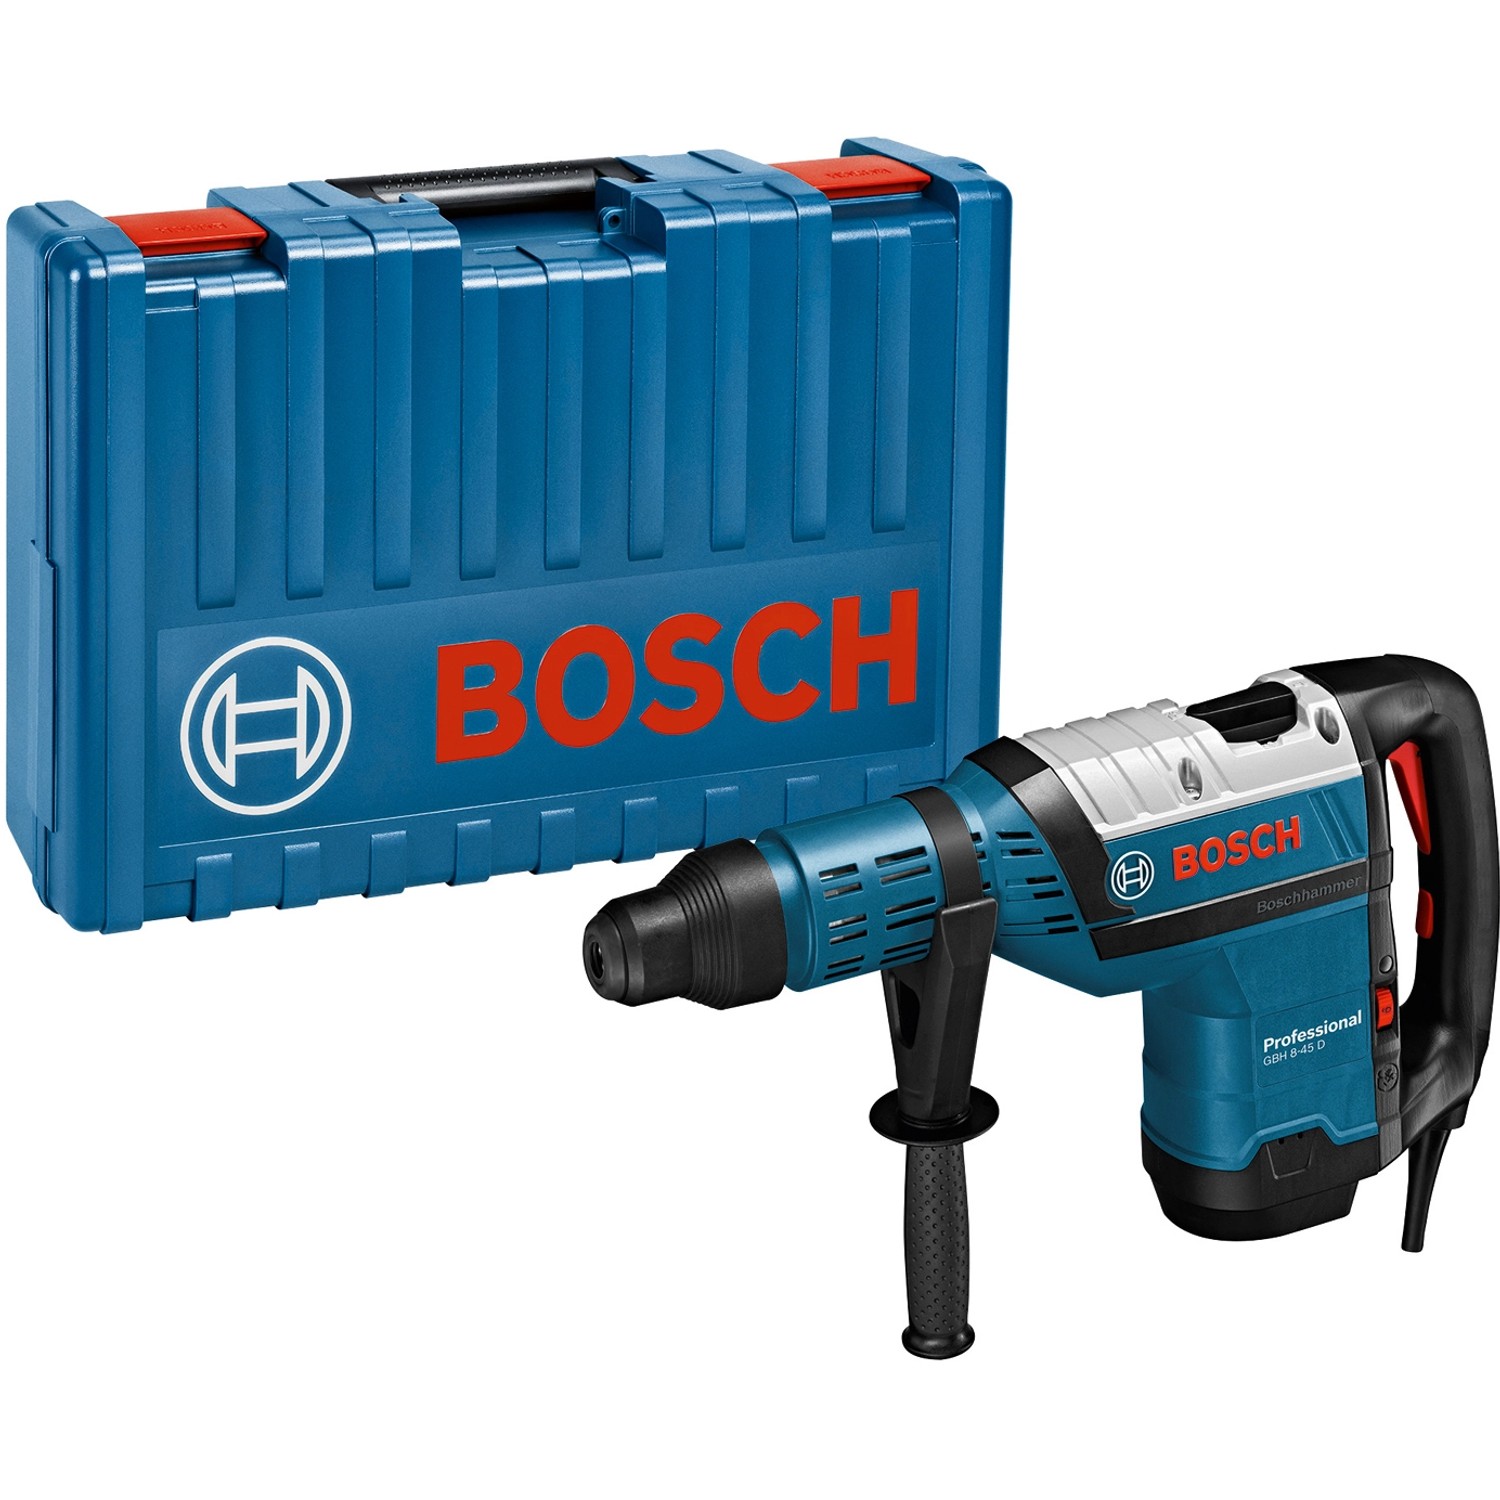 Bosch Professional Bohrhammer GBH 8-45 D im Handwerkerkoffer